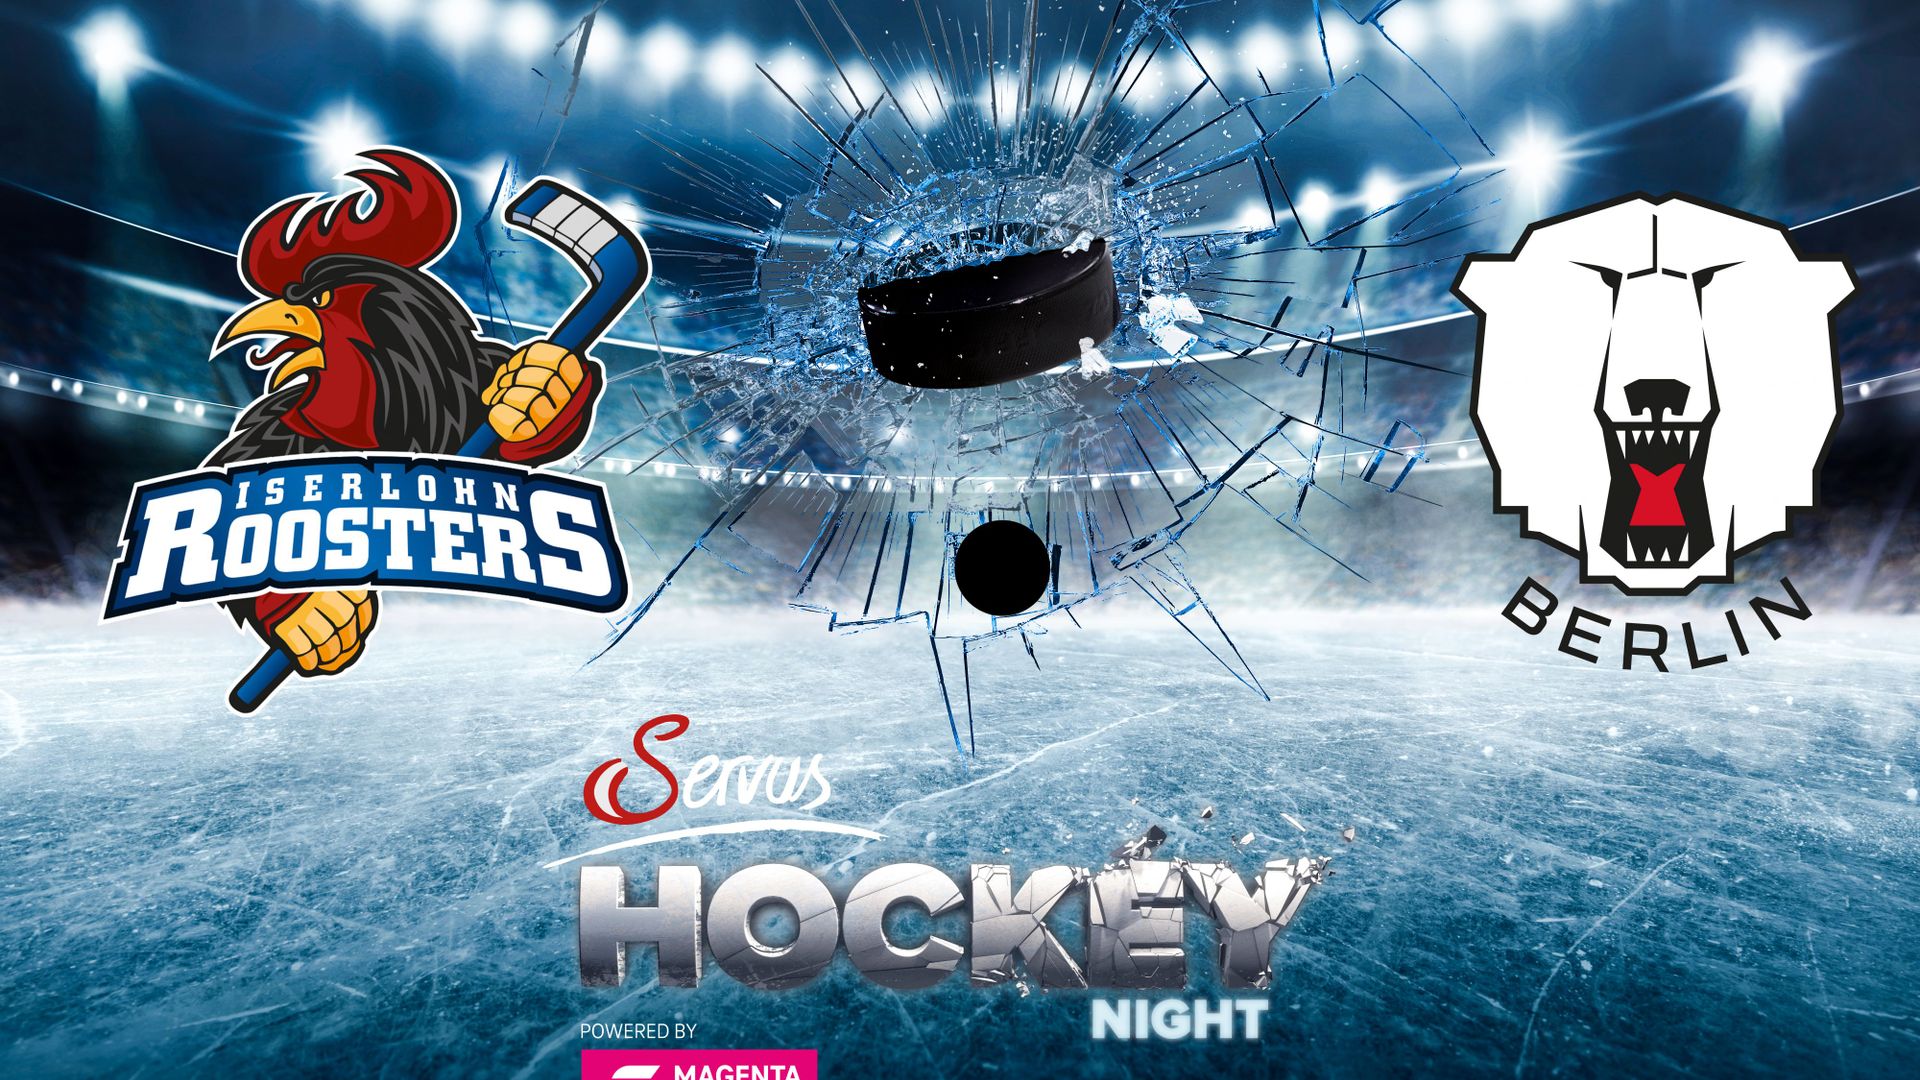 Servus Hockey Night powered by MagentaSport 29.01.2023 um 15:15 Uhr auf 